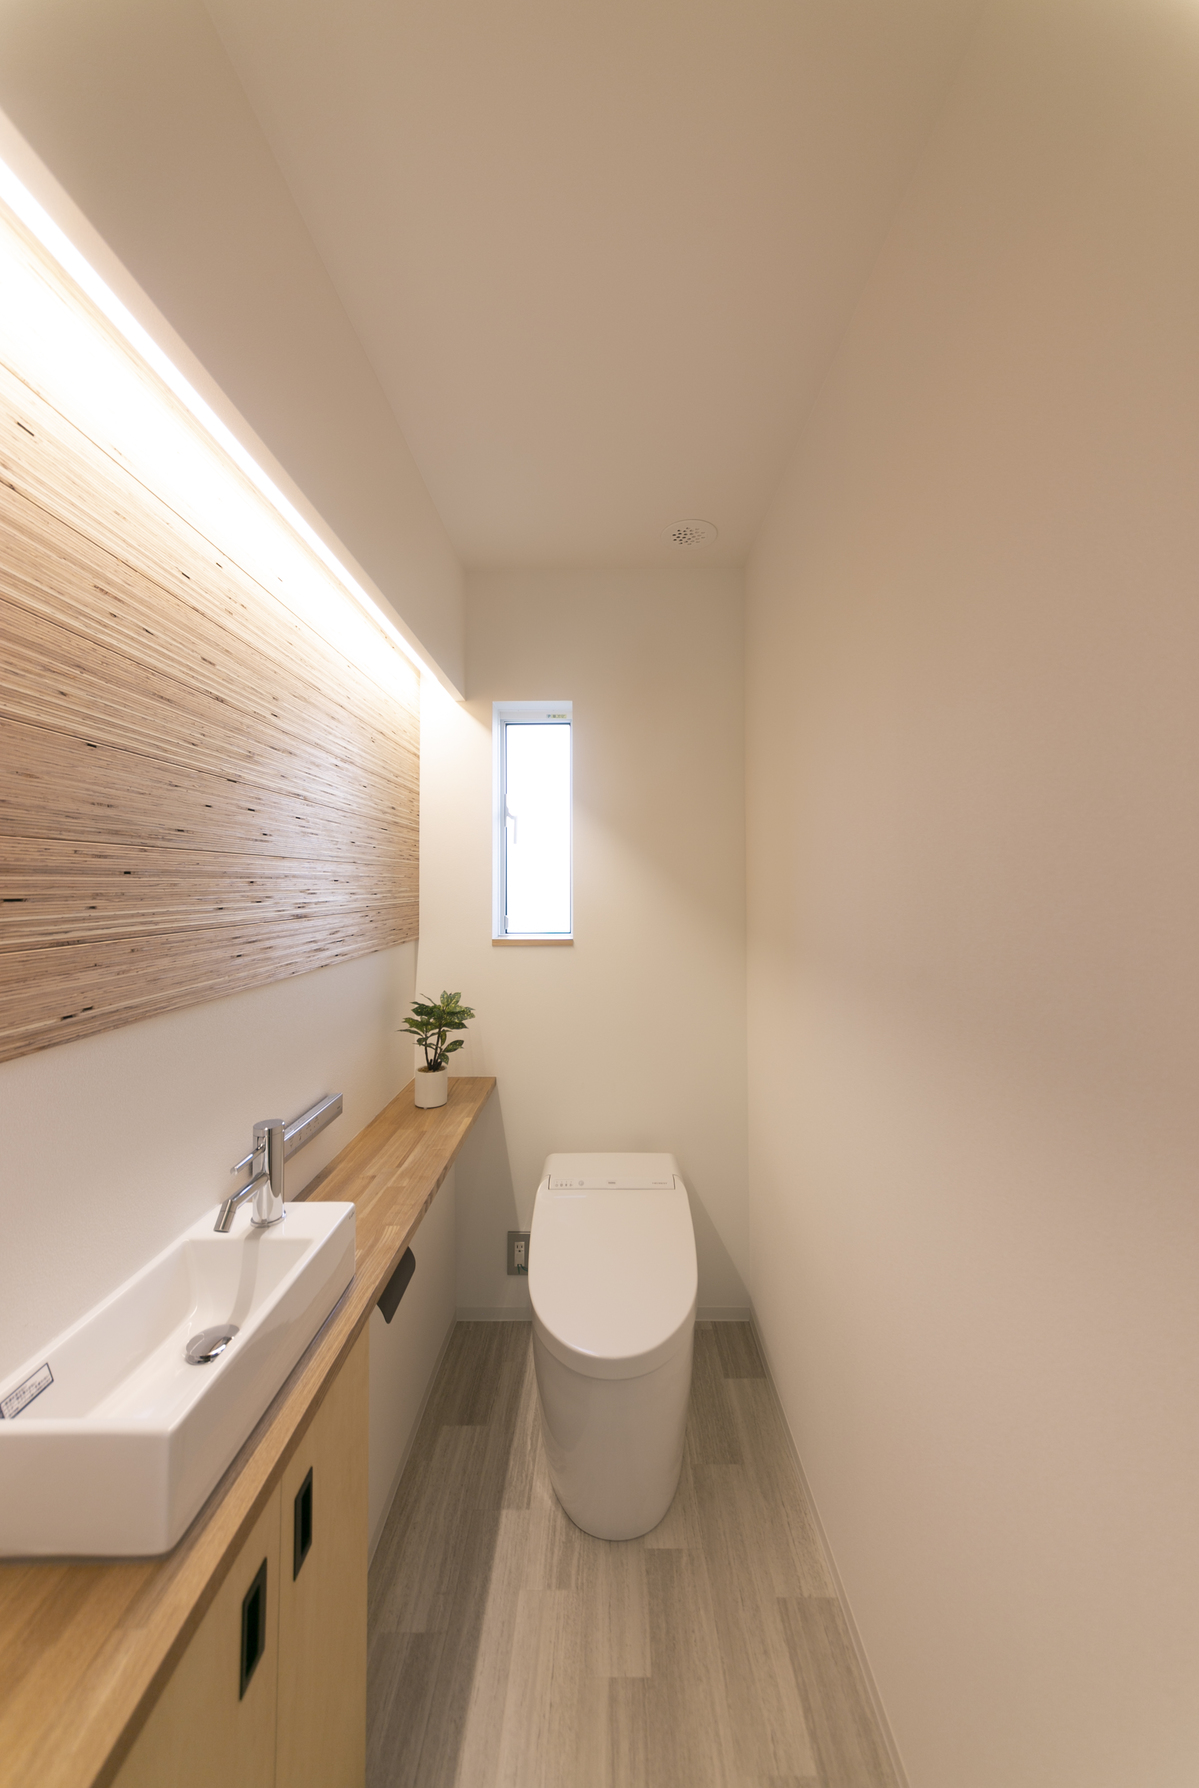 間接照明でおしゃれなトイレに ピース島根 島根県の新築住宅情報サイト